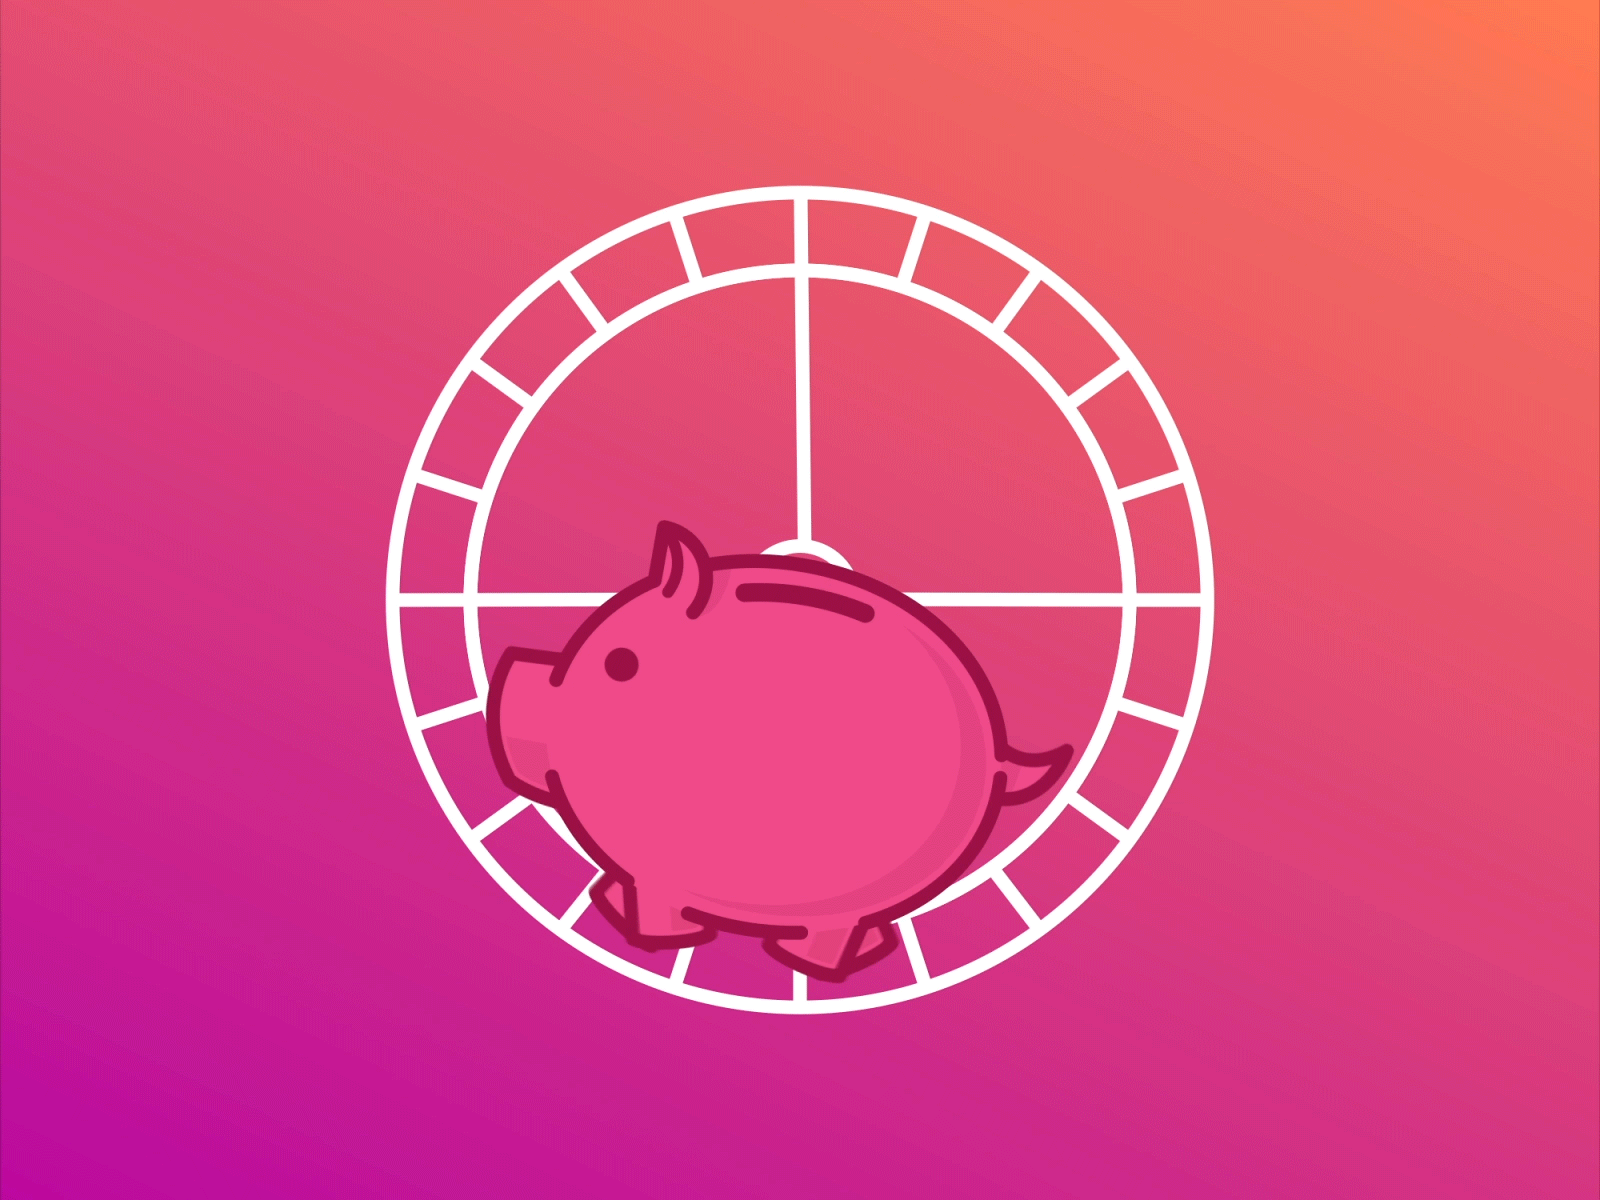 BUX Zero - Make your money work after effects animation bux bux zero fintech money pig piggy piggybank pink savings workout